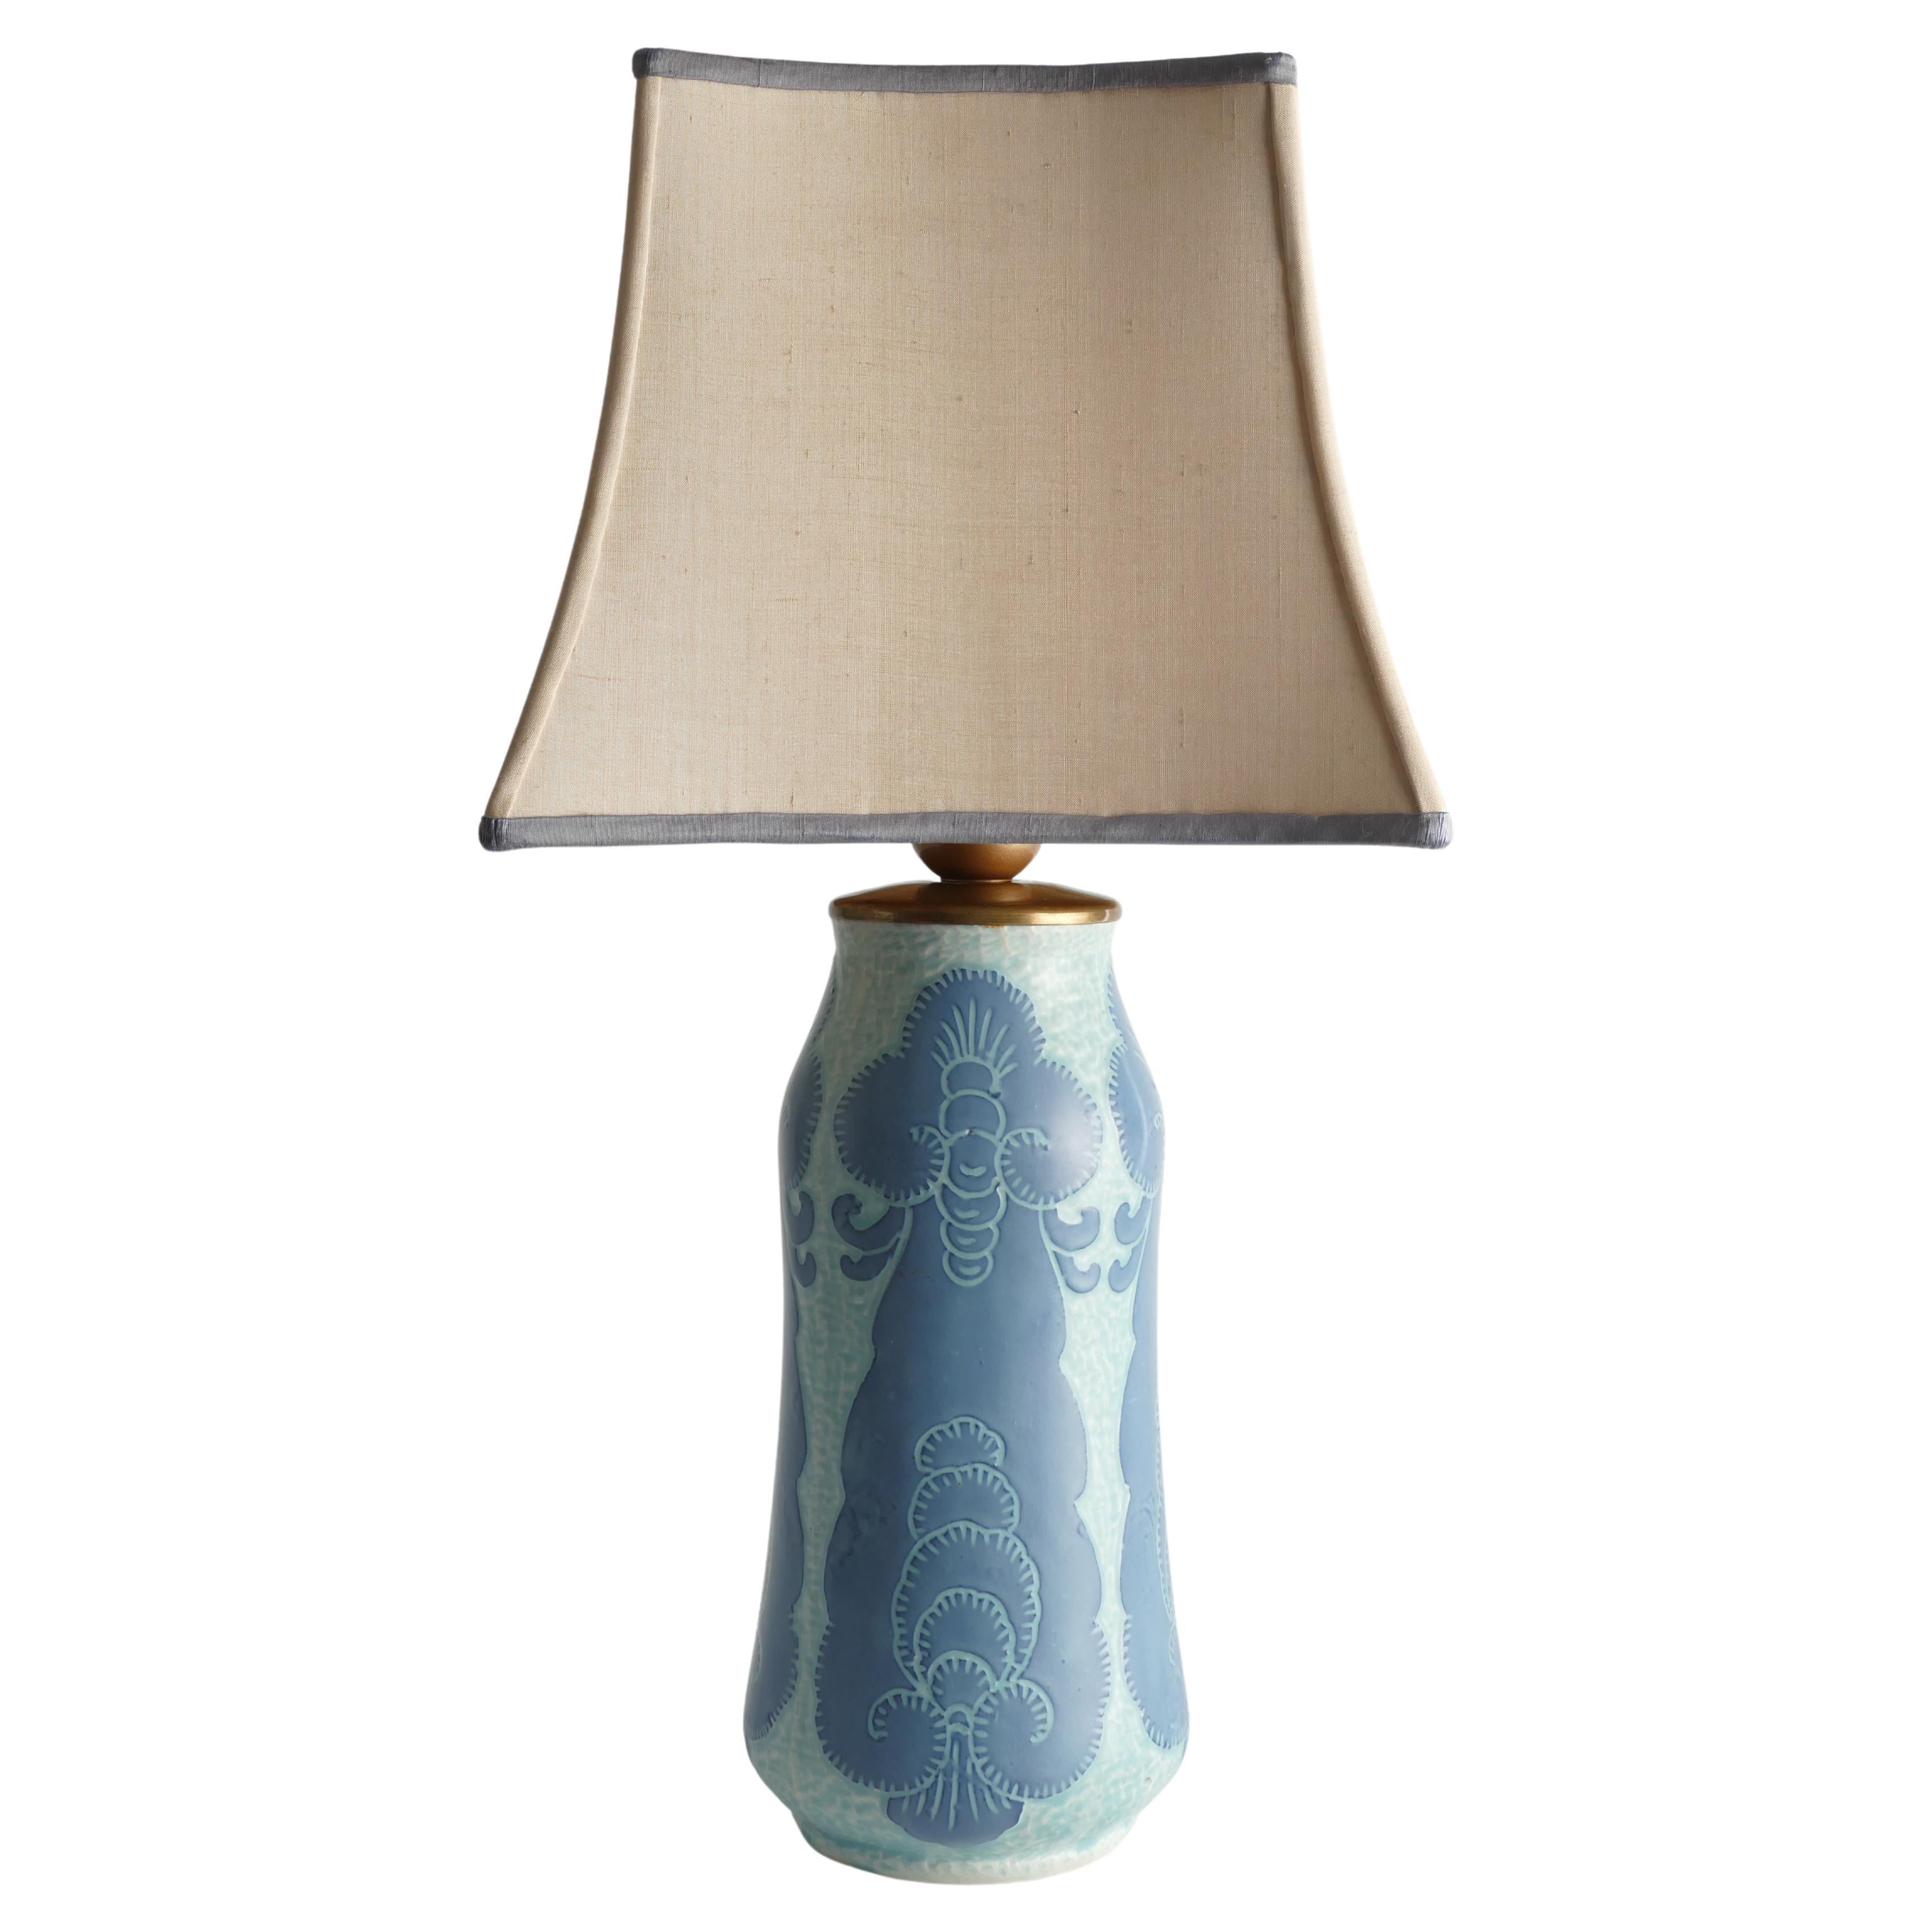 Unique Art Nouveau Pale Blue Ceramic Table Lamp by Josef Ekberg for Gustavsberg For Sale